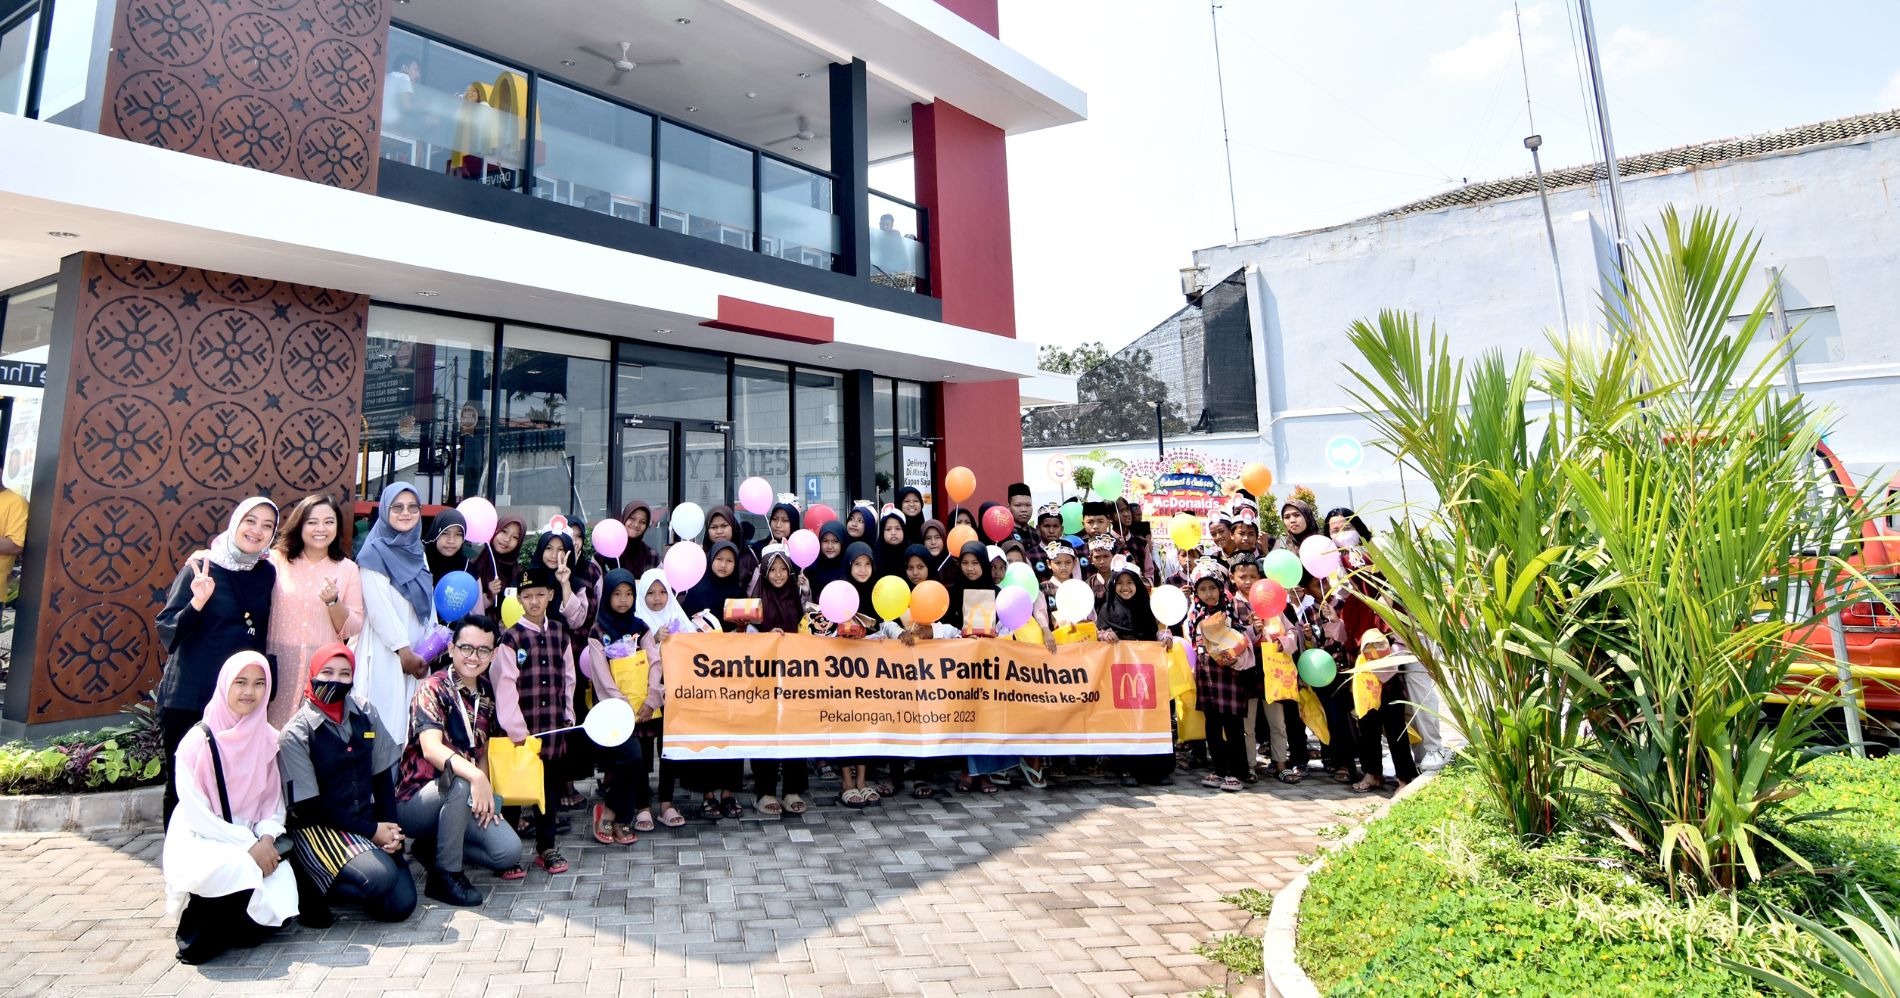 McDonalds Indonesia Bersama Anak-anak Panti Asuhan